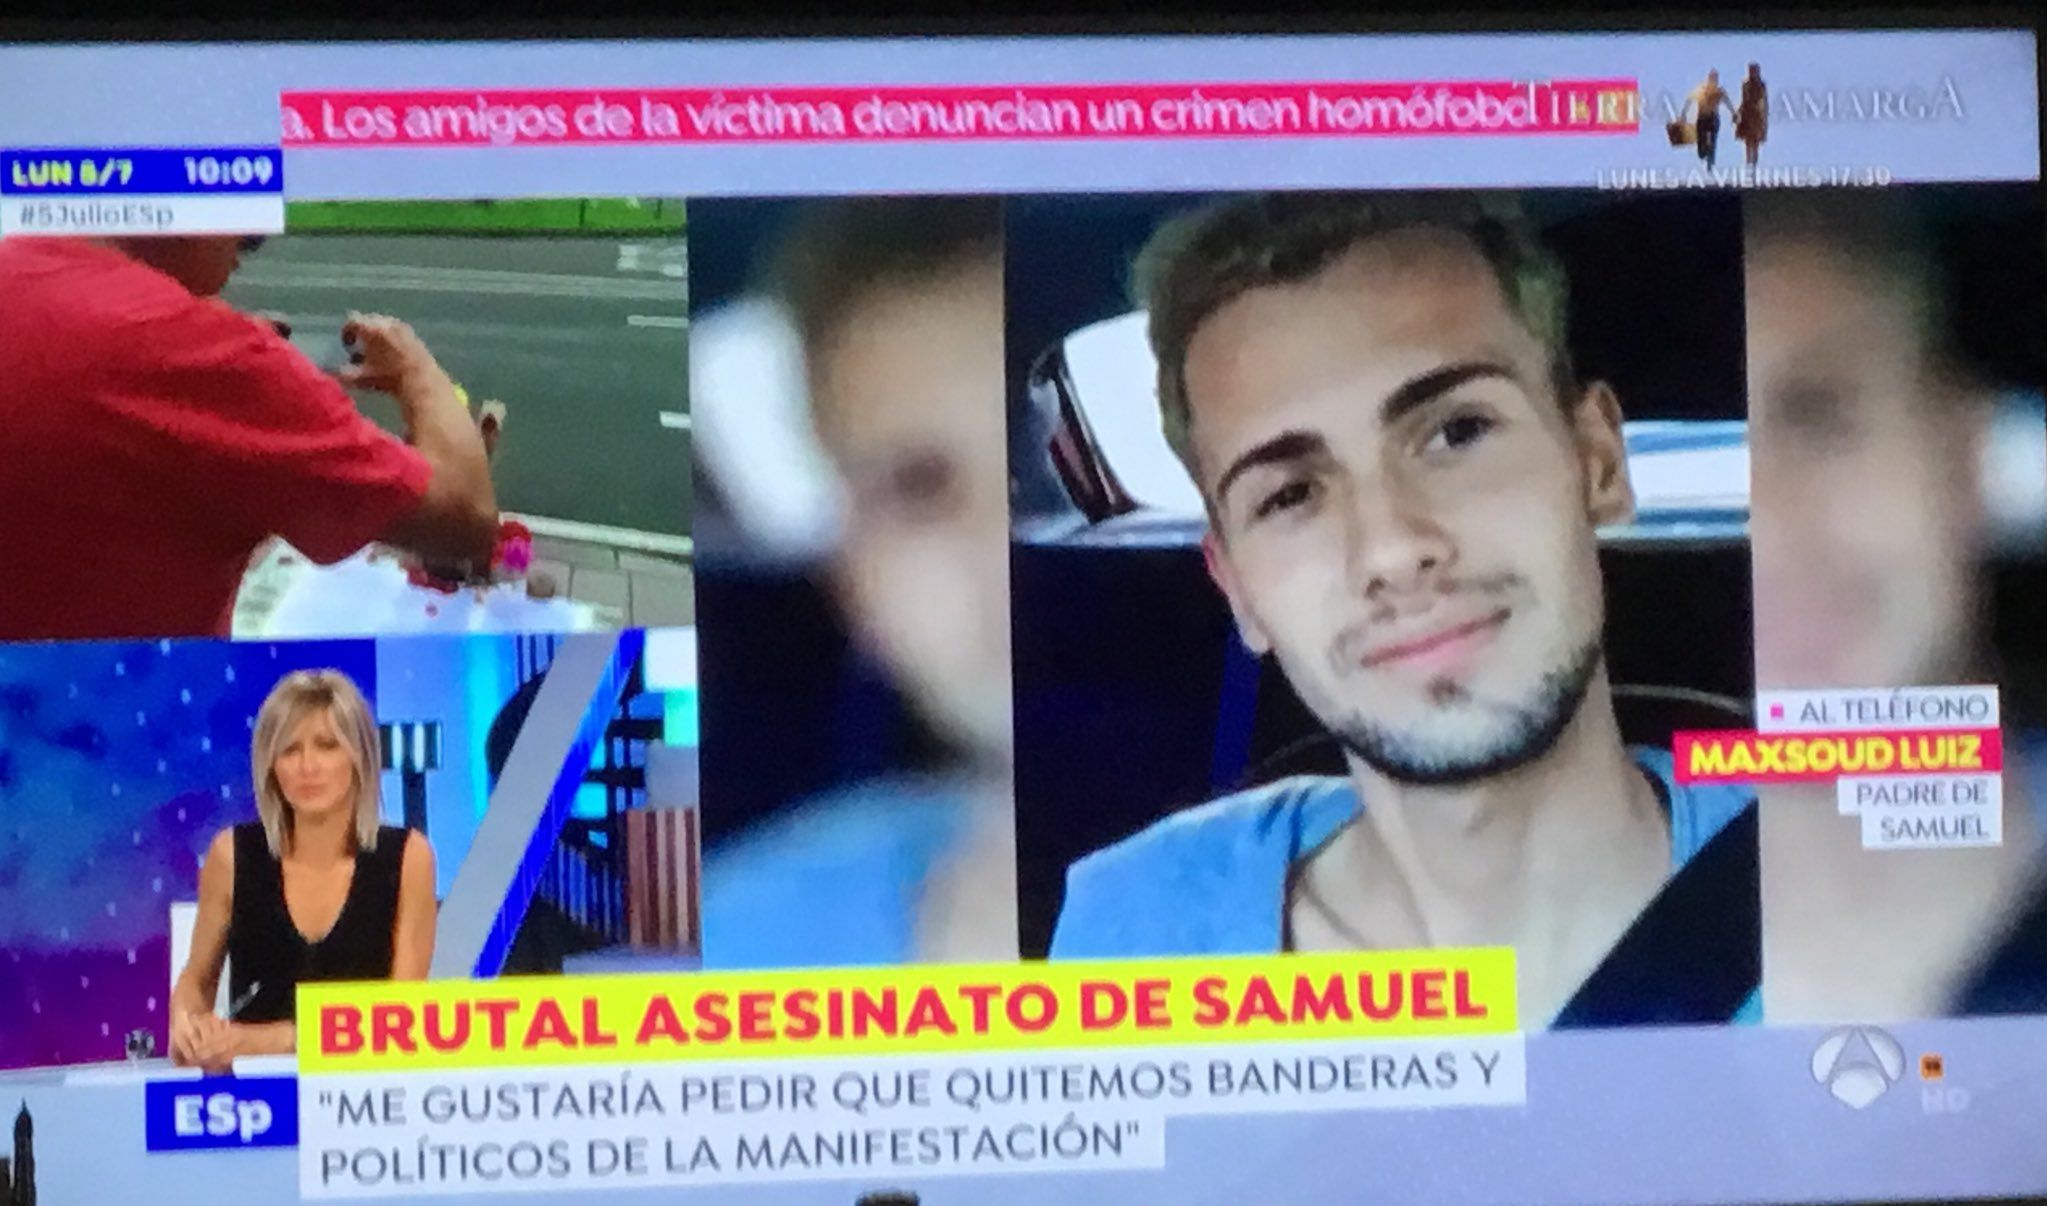 La "vomitiva" entrevista de Susana Griso al padre de Samuel: "No quiero que se utilice la muerte de mi hijo", en una captura de Twitter.